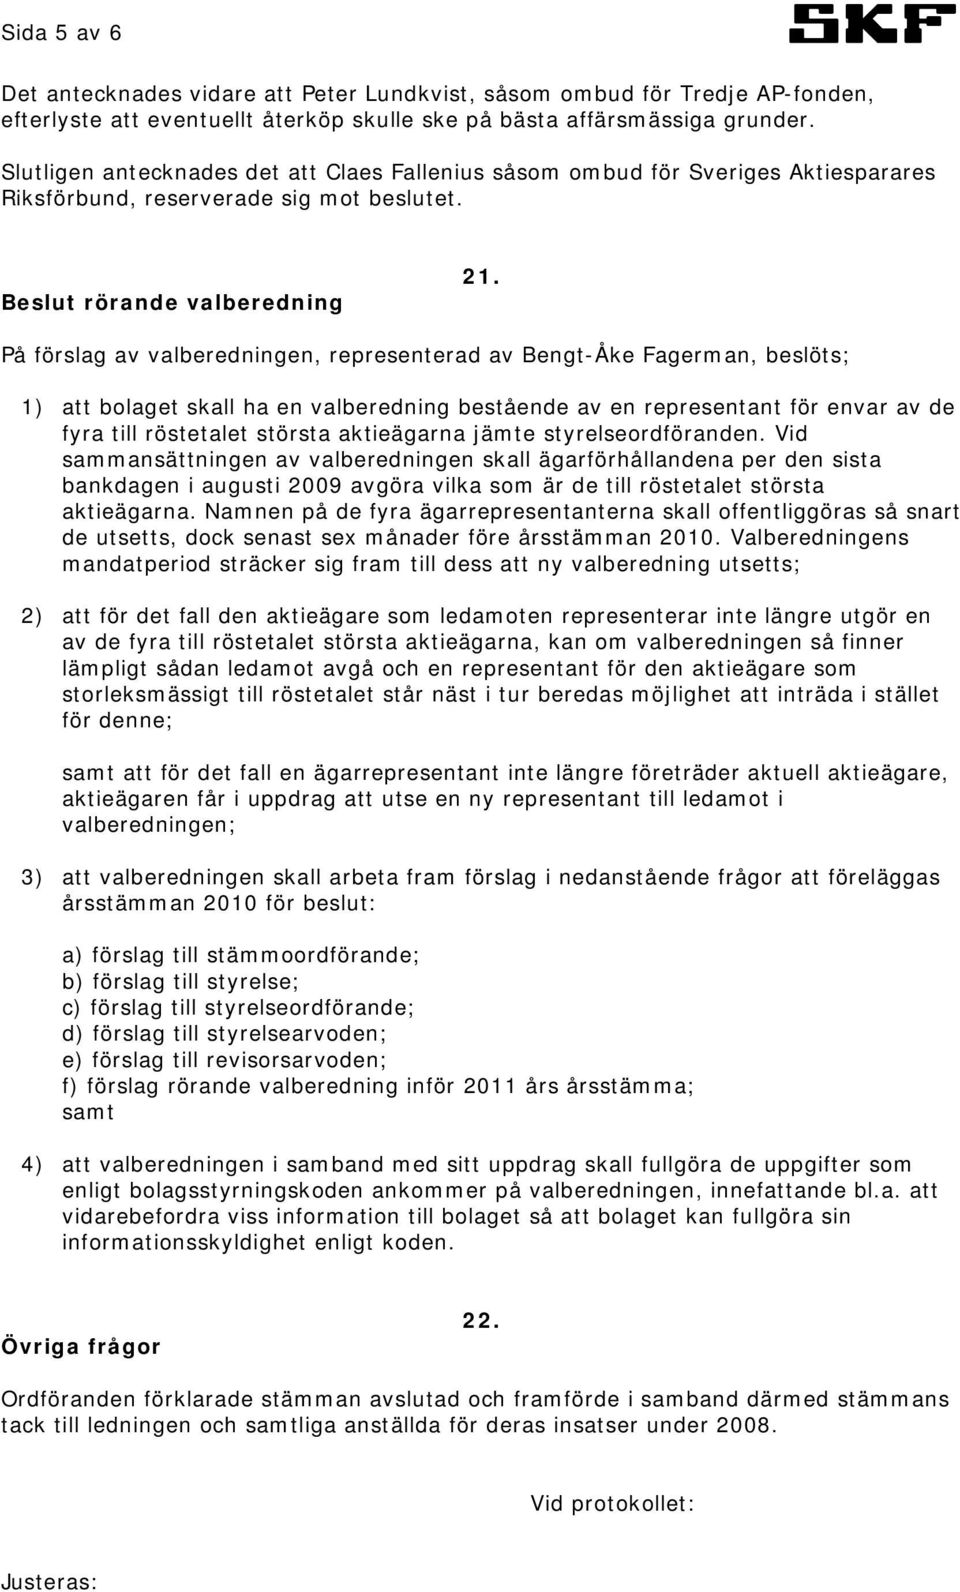 På förslag av valberedningen, representerad av Bengt-Åke Fagerman, beslöts; 1) att bolaget skall ha en valberedning bestående av en representant för envar av de fyra till röstetalet största